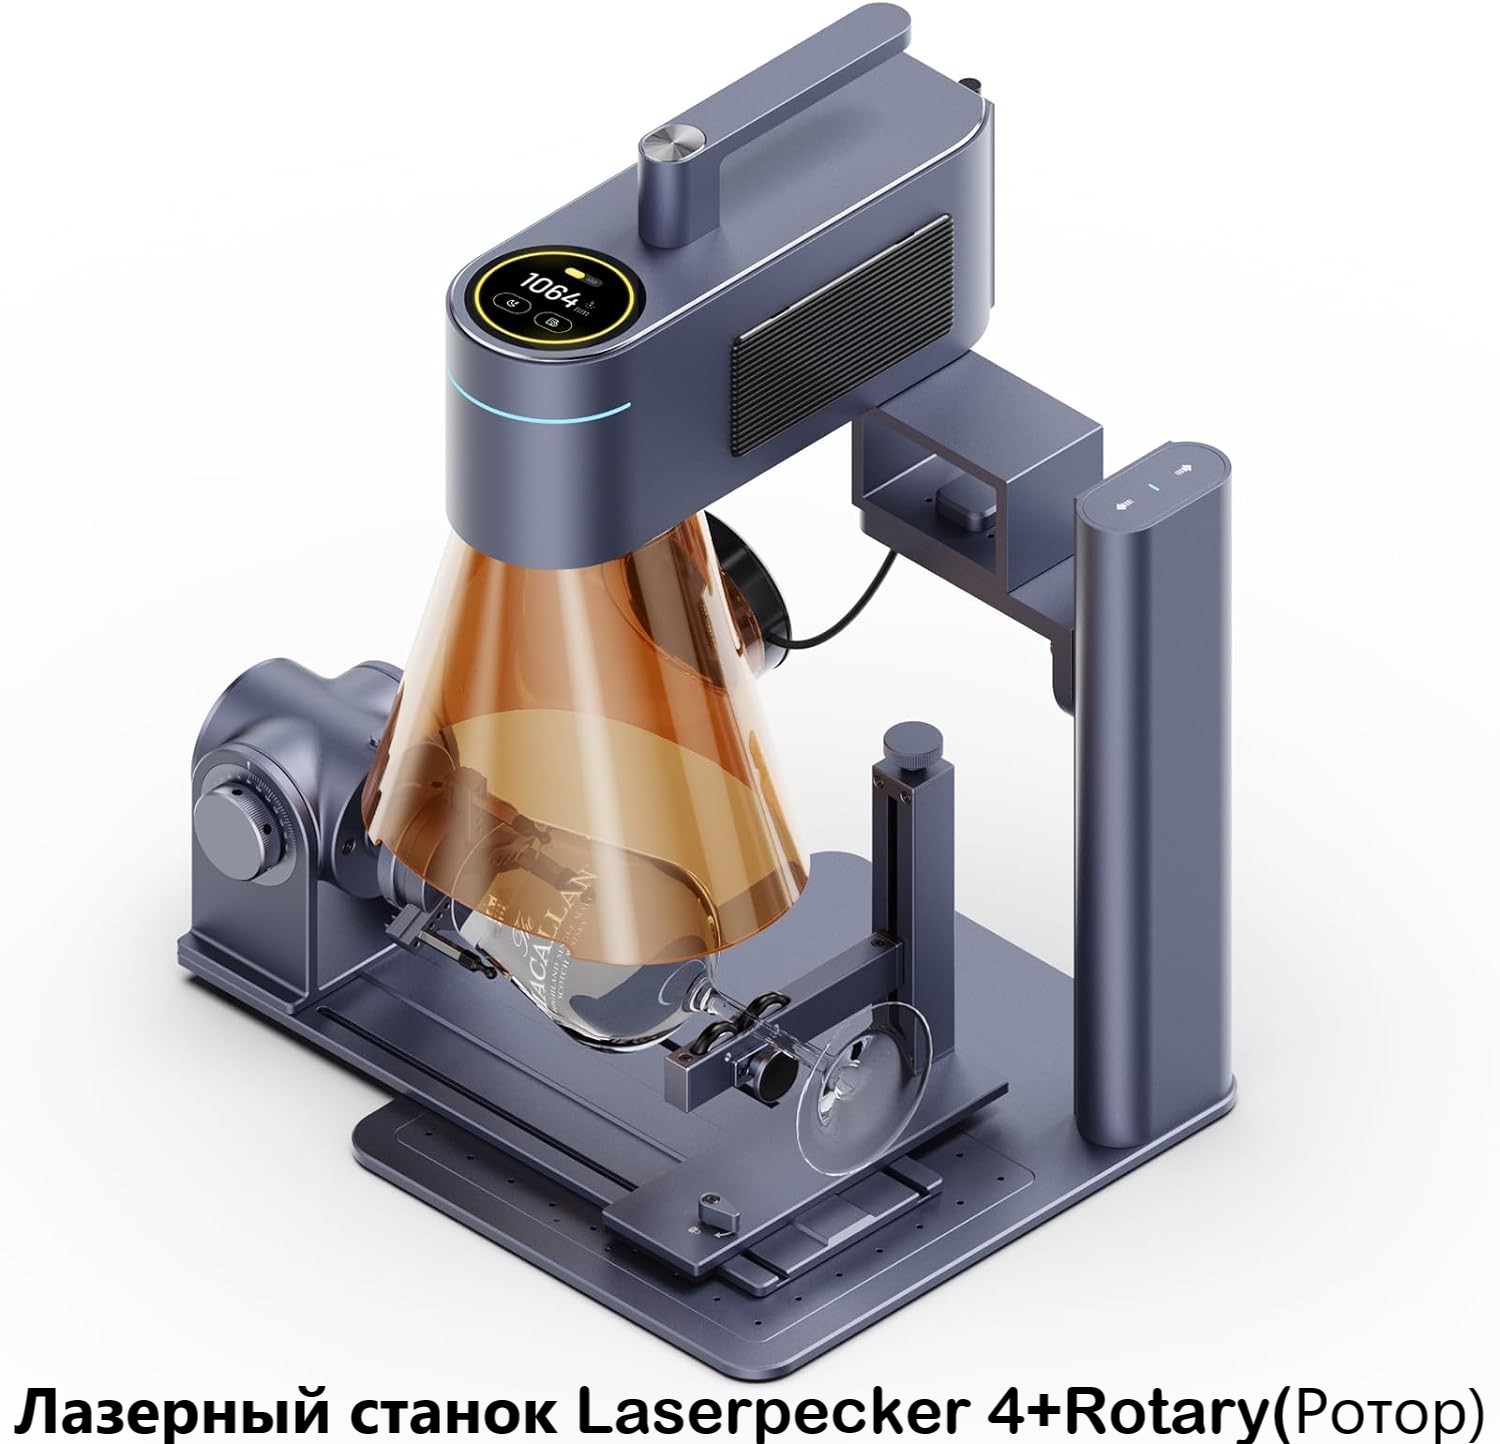 Станок для лазерной гравировки, маркировки, резки LaserPecker 4 + Rotary Extension (ротор) станок для лазерной гравировки маркировки резки laserpecker 4 rotary extension ротор